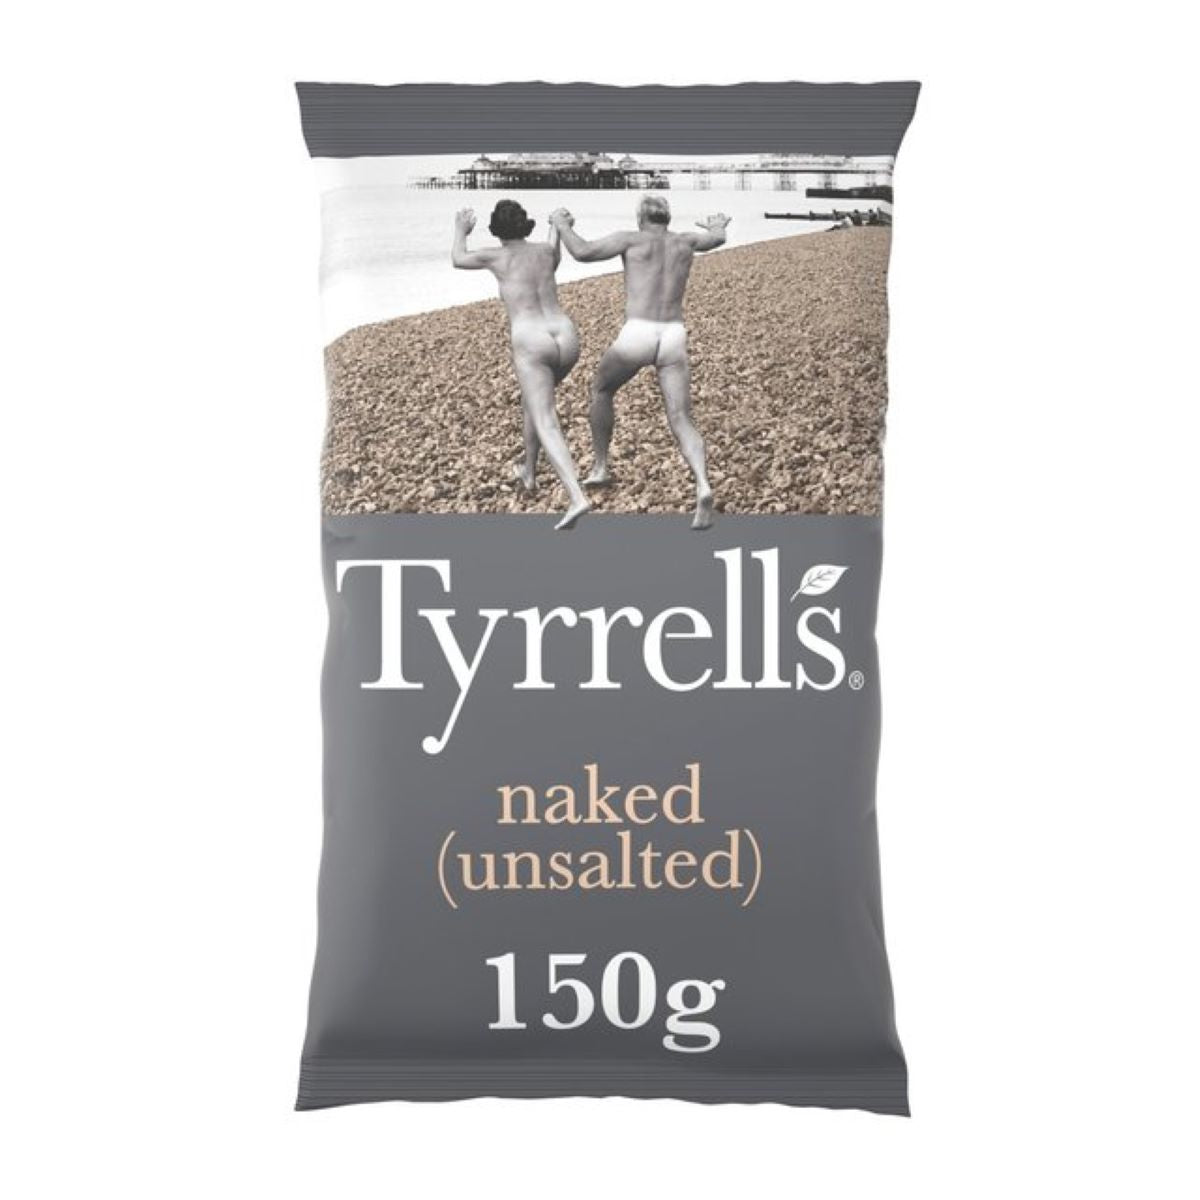 Tyrrells Naked Sharing Crisps 150g